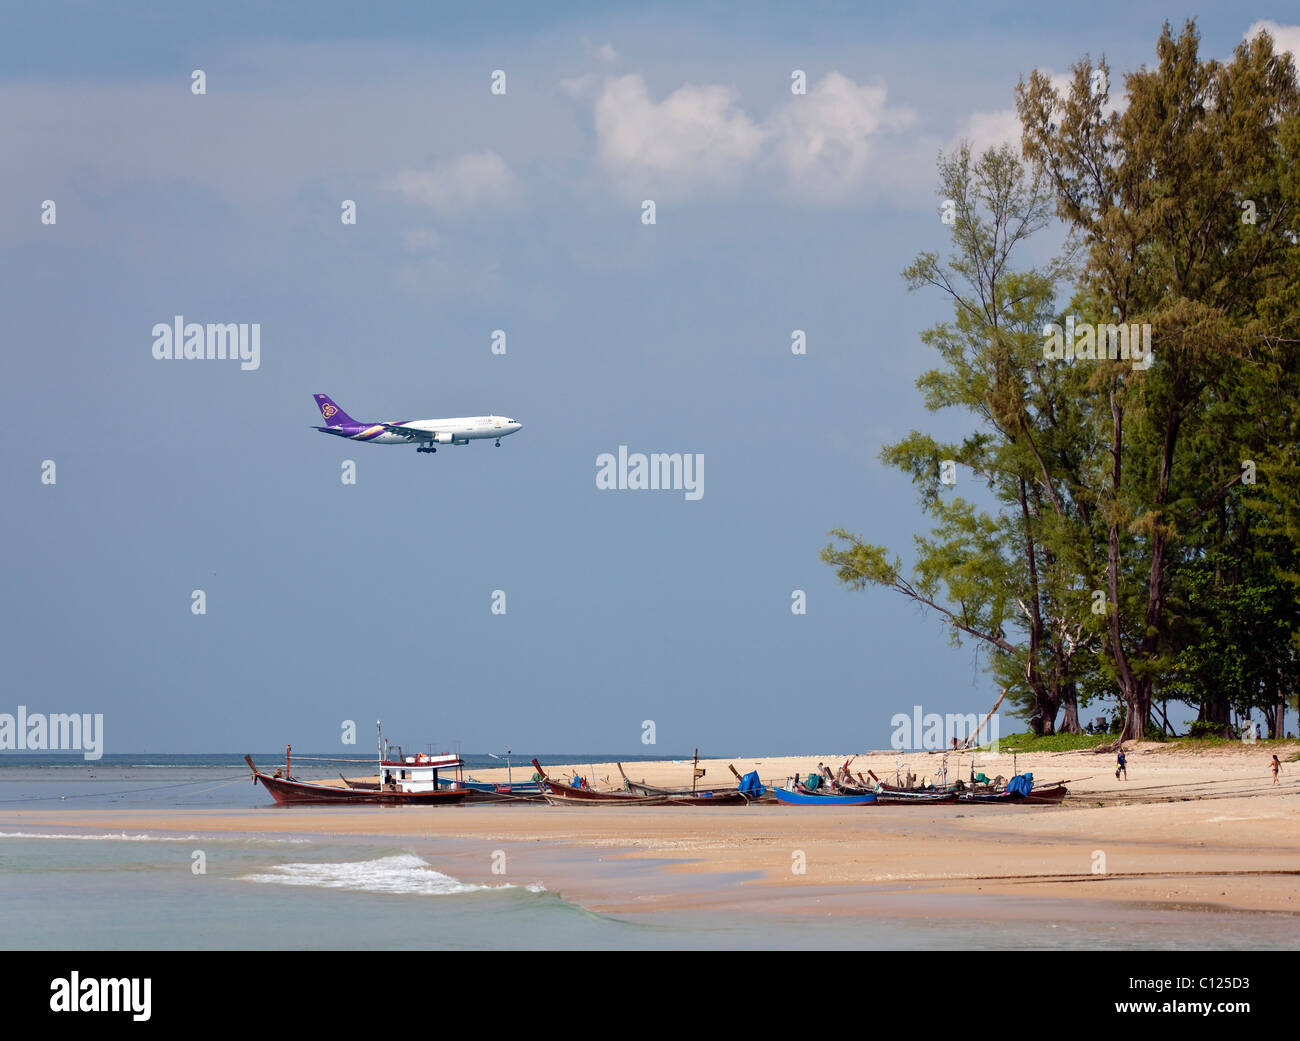 Plane of Thai Airways landing on Phuket Island, Southern Thailand, Thailand, Southeast Asia Stock Photo